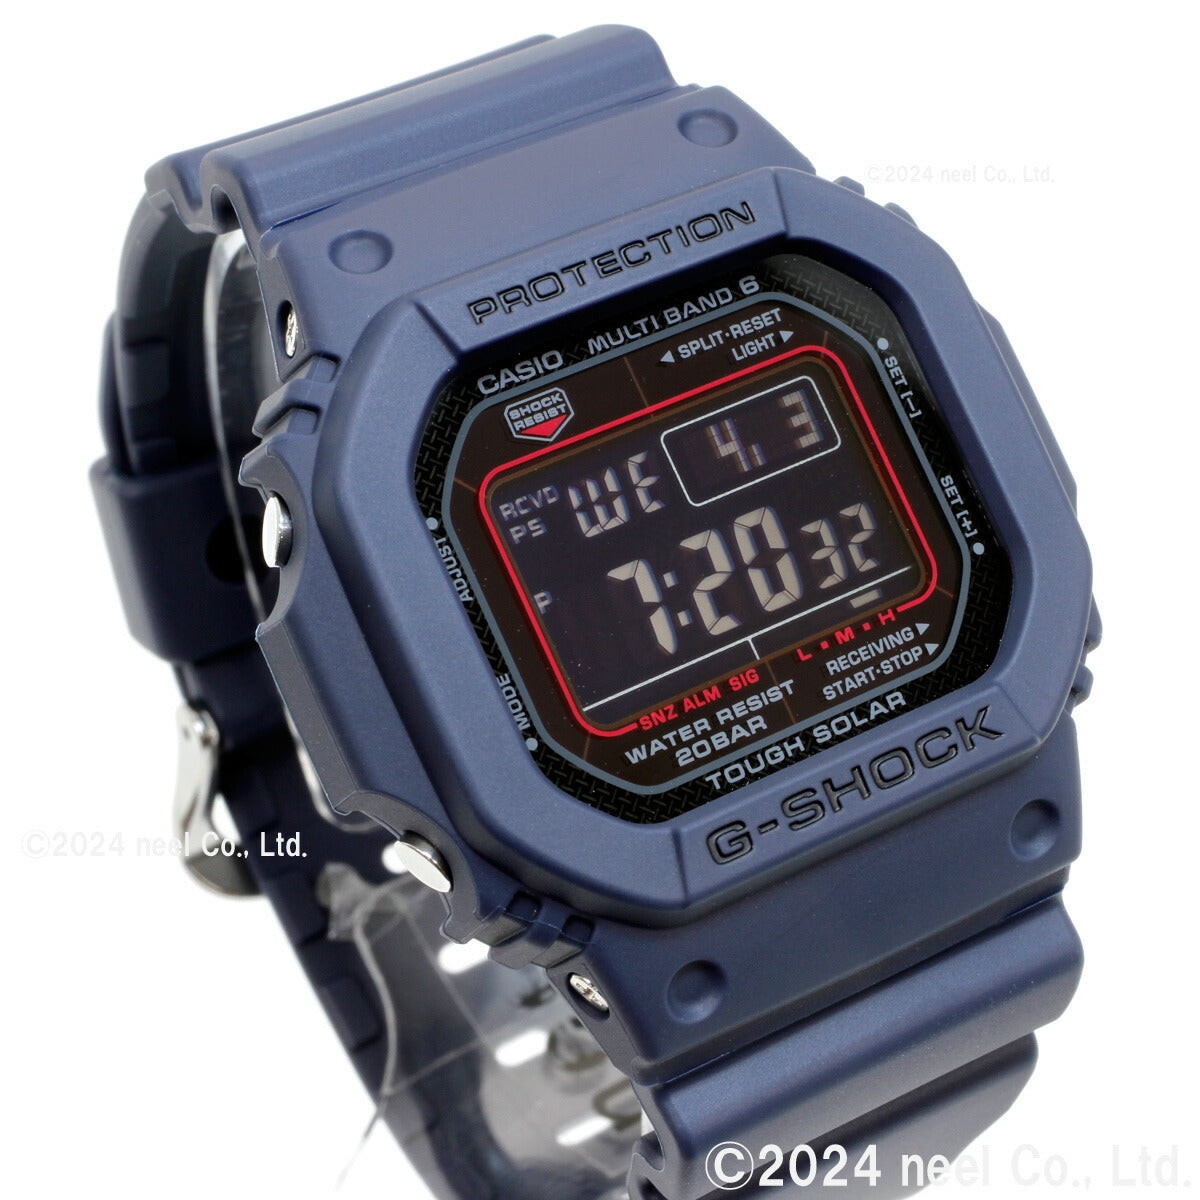 G-SHOCK Gショック GW-M5610U-2JF 電波 ソーラー 電波時計 5600 デジタル メンズ 腕時計 カシオ CASIO タフソーラー